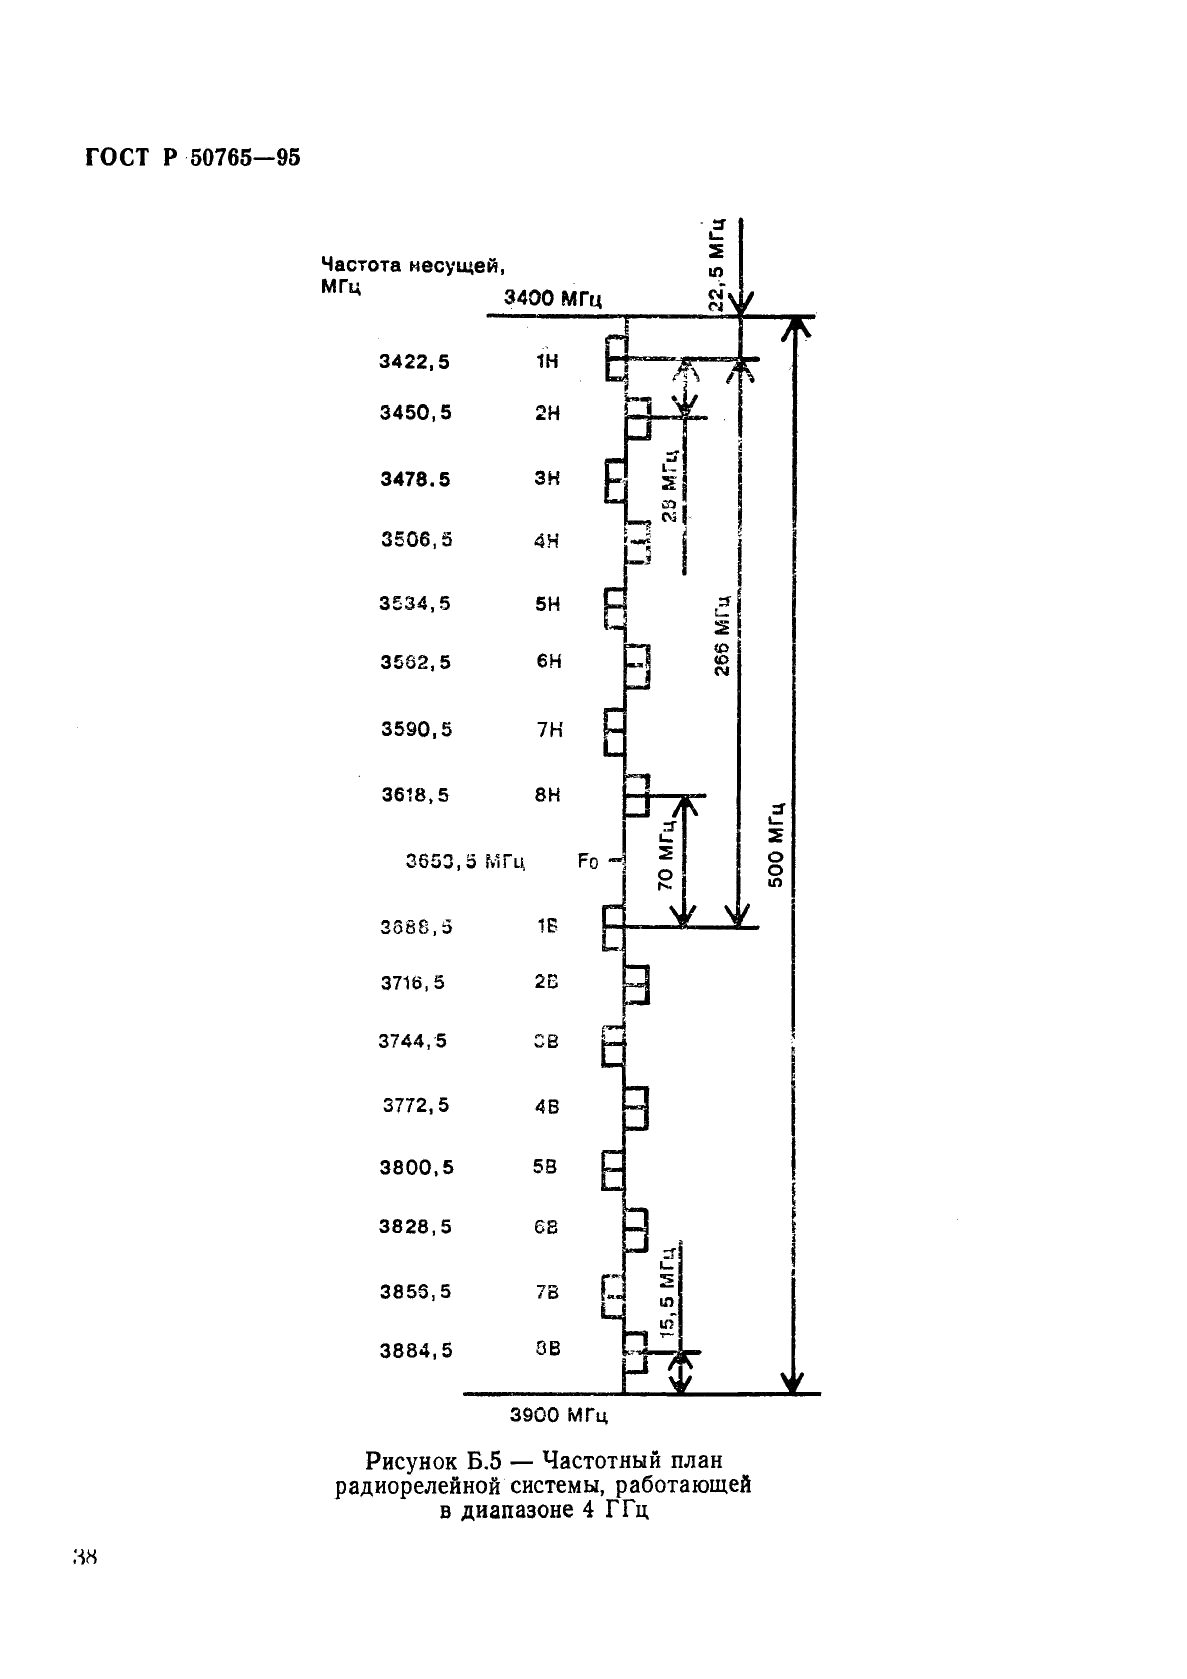 ГОСТ Р 50765-95 Аппаратура радиорелейная. Классификация. Основные параметры цепей стыка (фото 41 из 62)